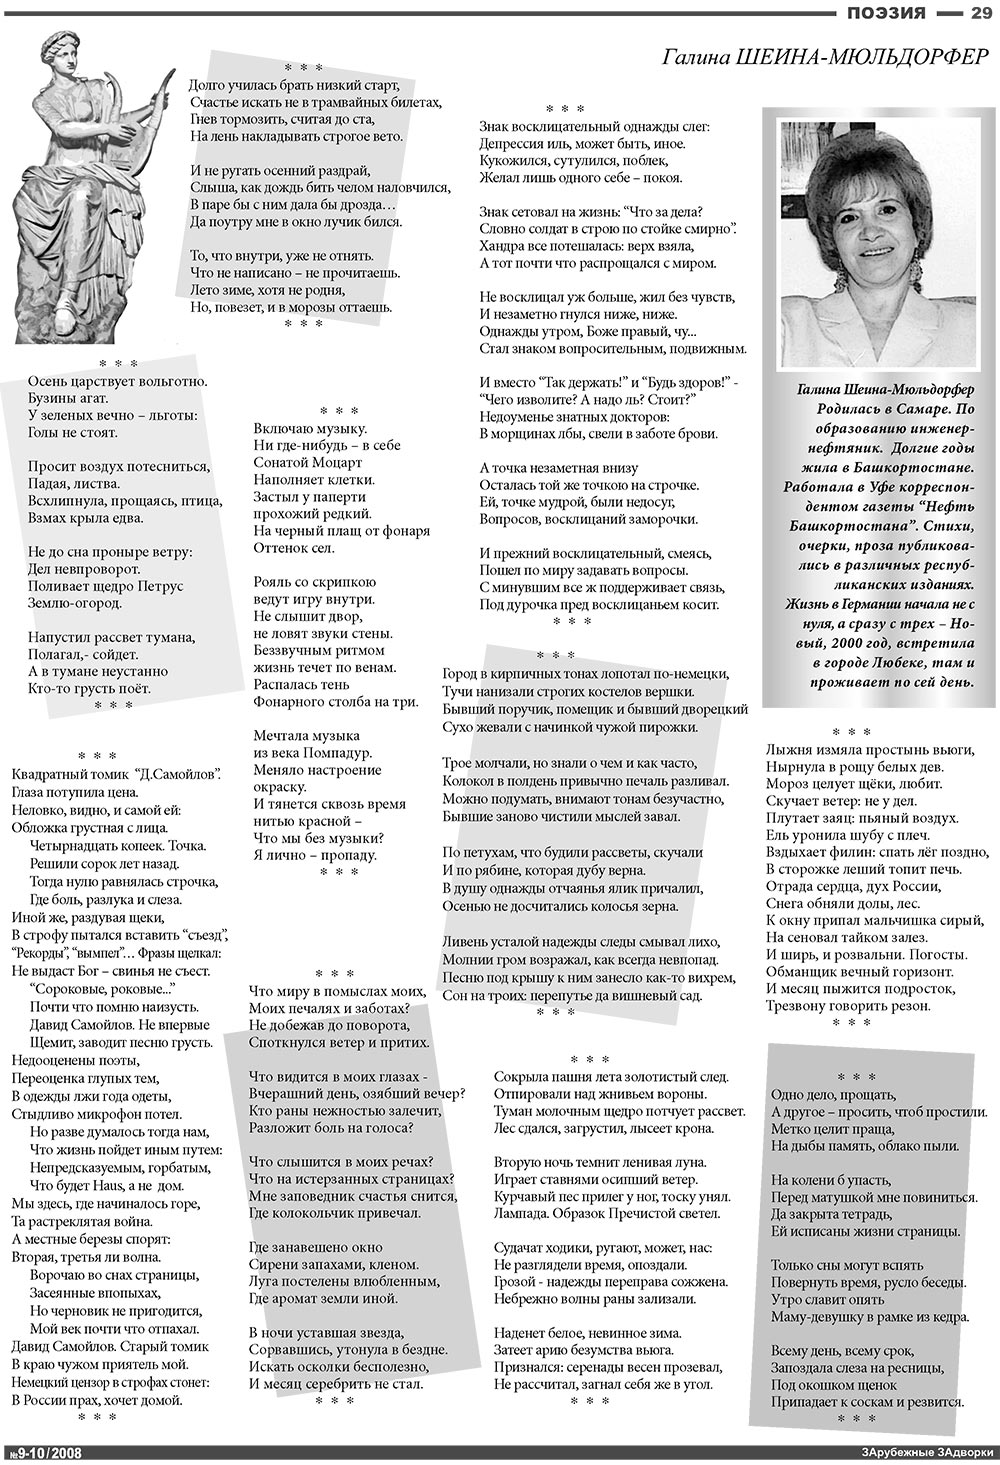 Известия BW, газета. 2008 №10 стр.29